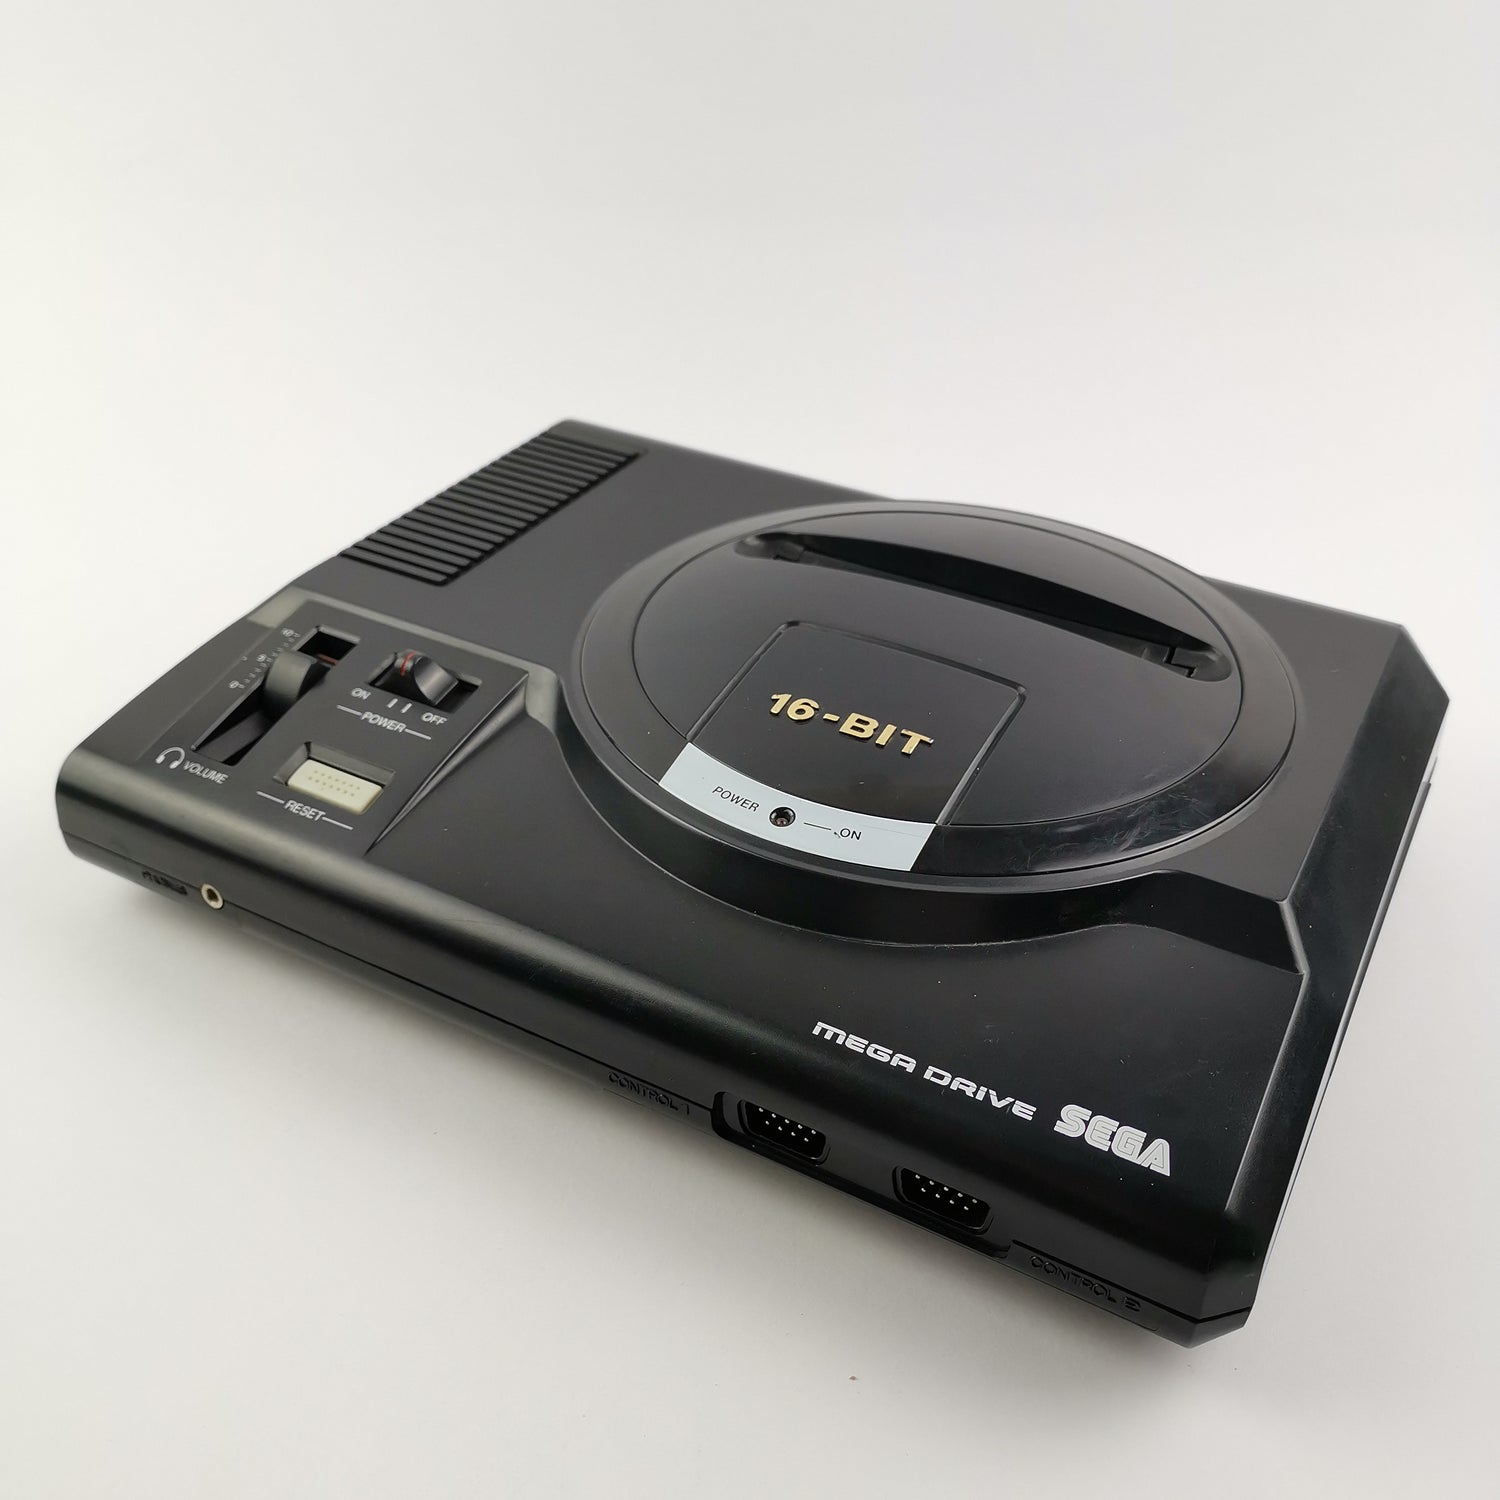 Sega Mega Drive I mit 2 Controller, 3 Spielen u. Anschlusskabel - MD Console PAL